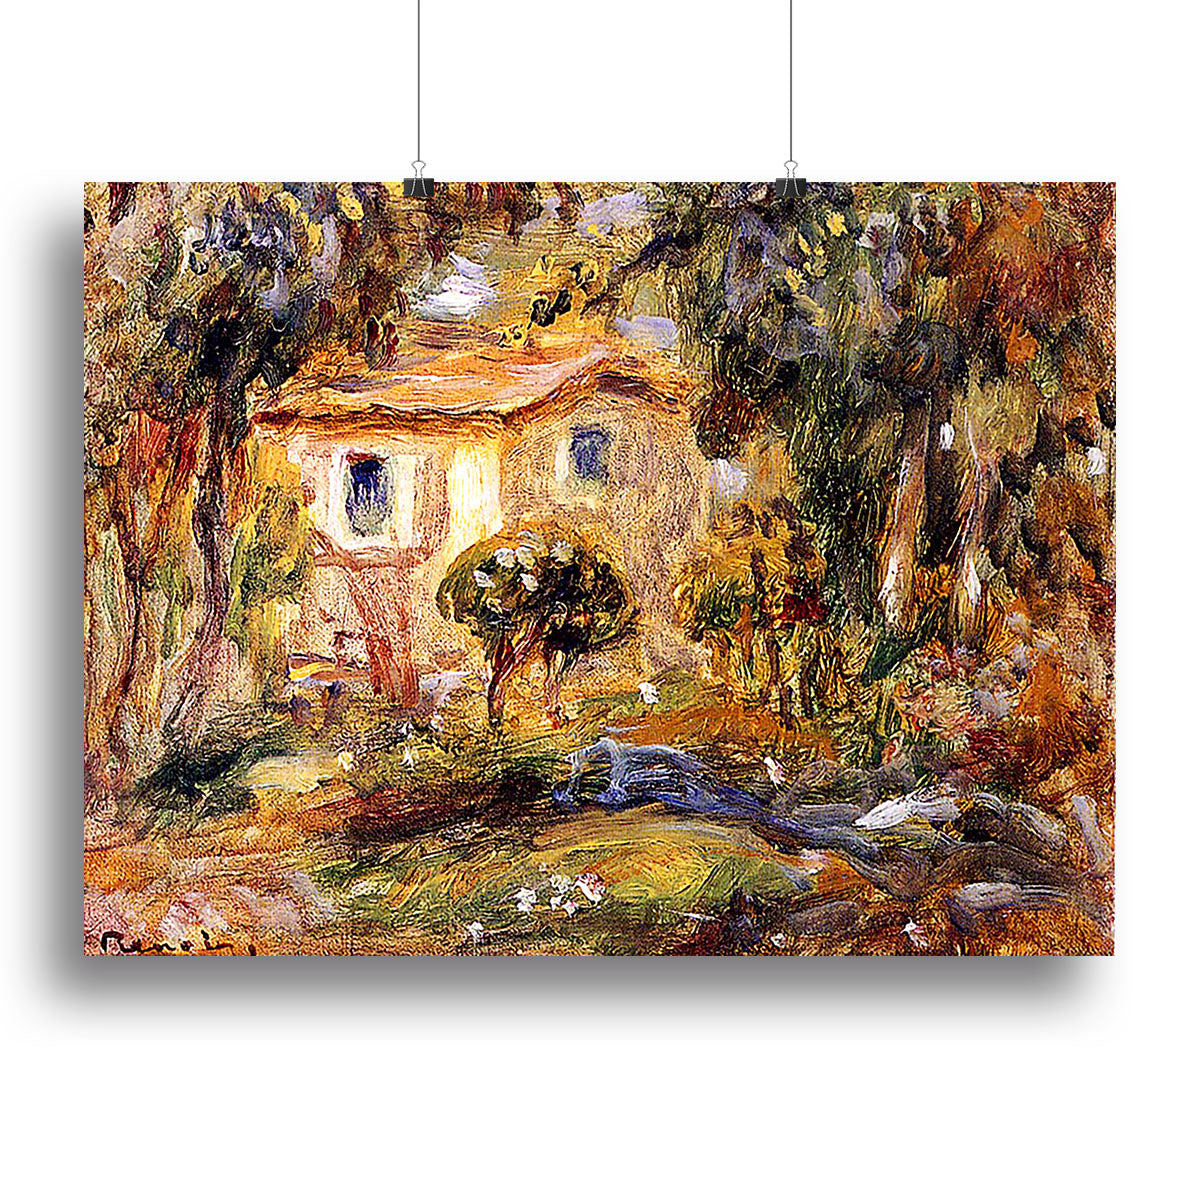 Landscape1 by Renoir Canvas Print or Poster - Canvas Art Rocks - 2